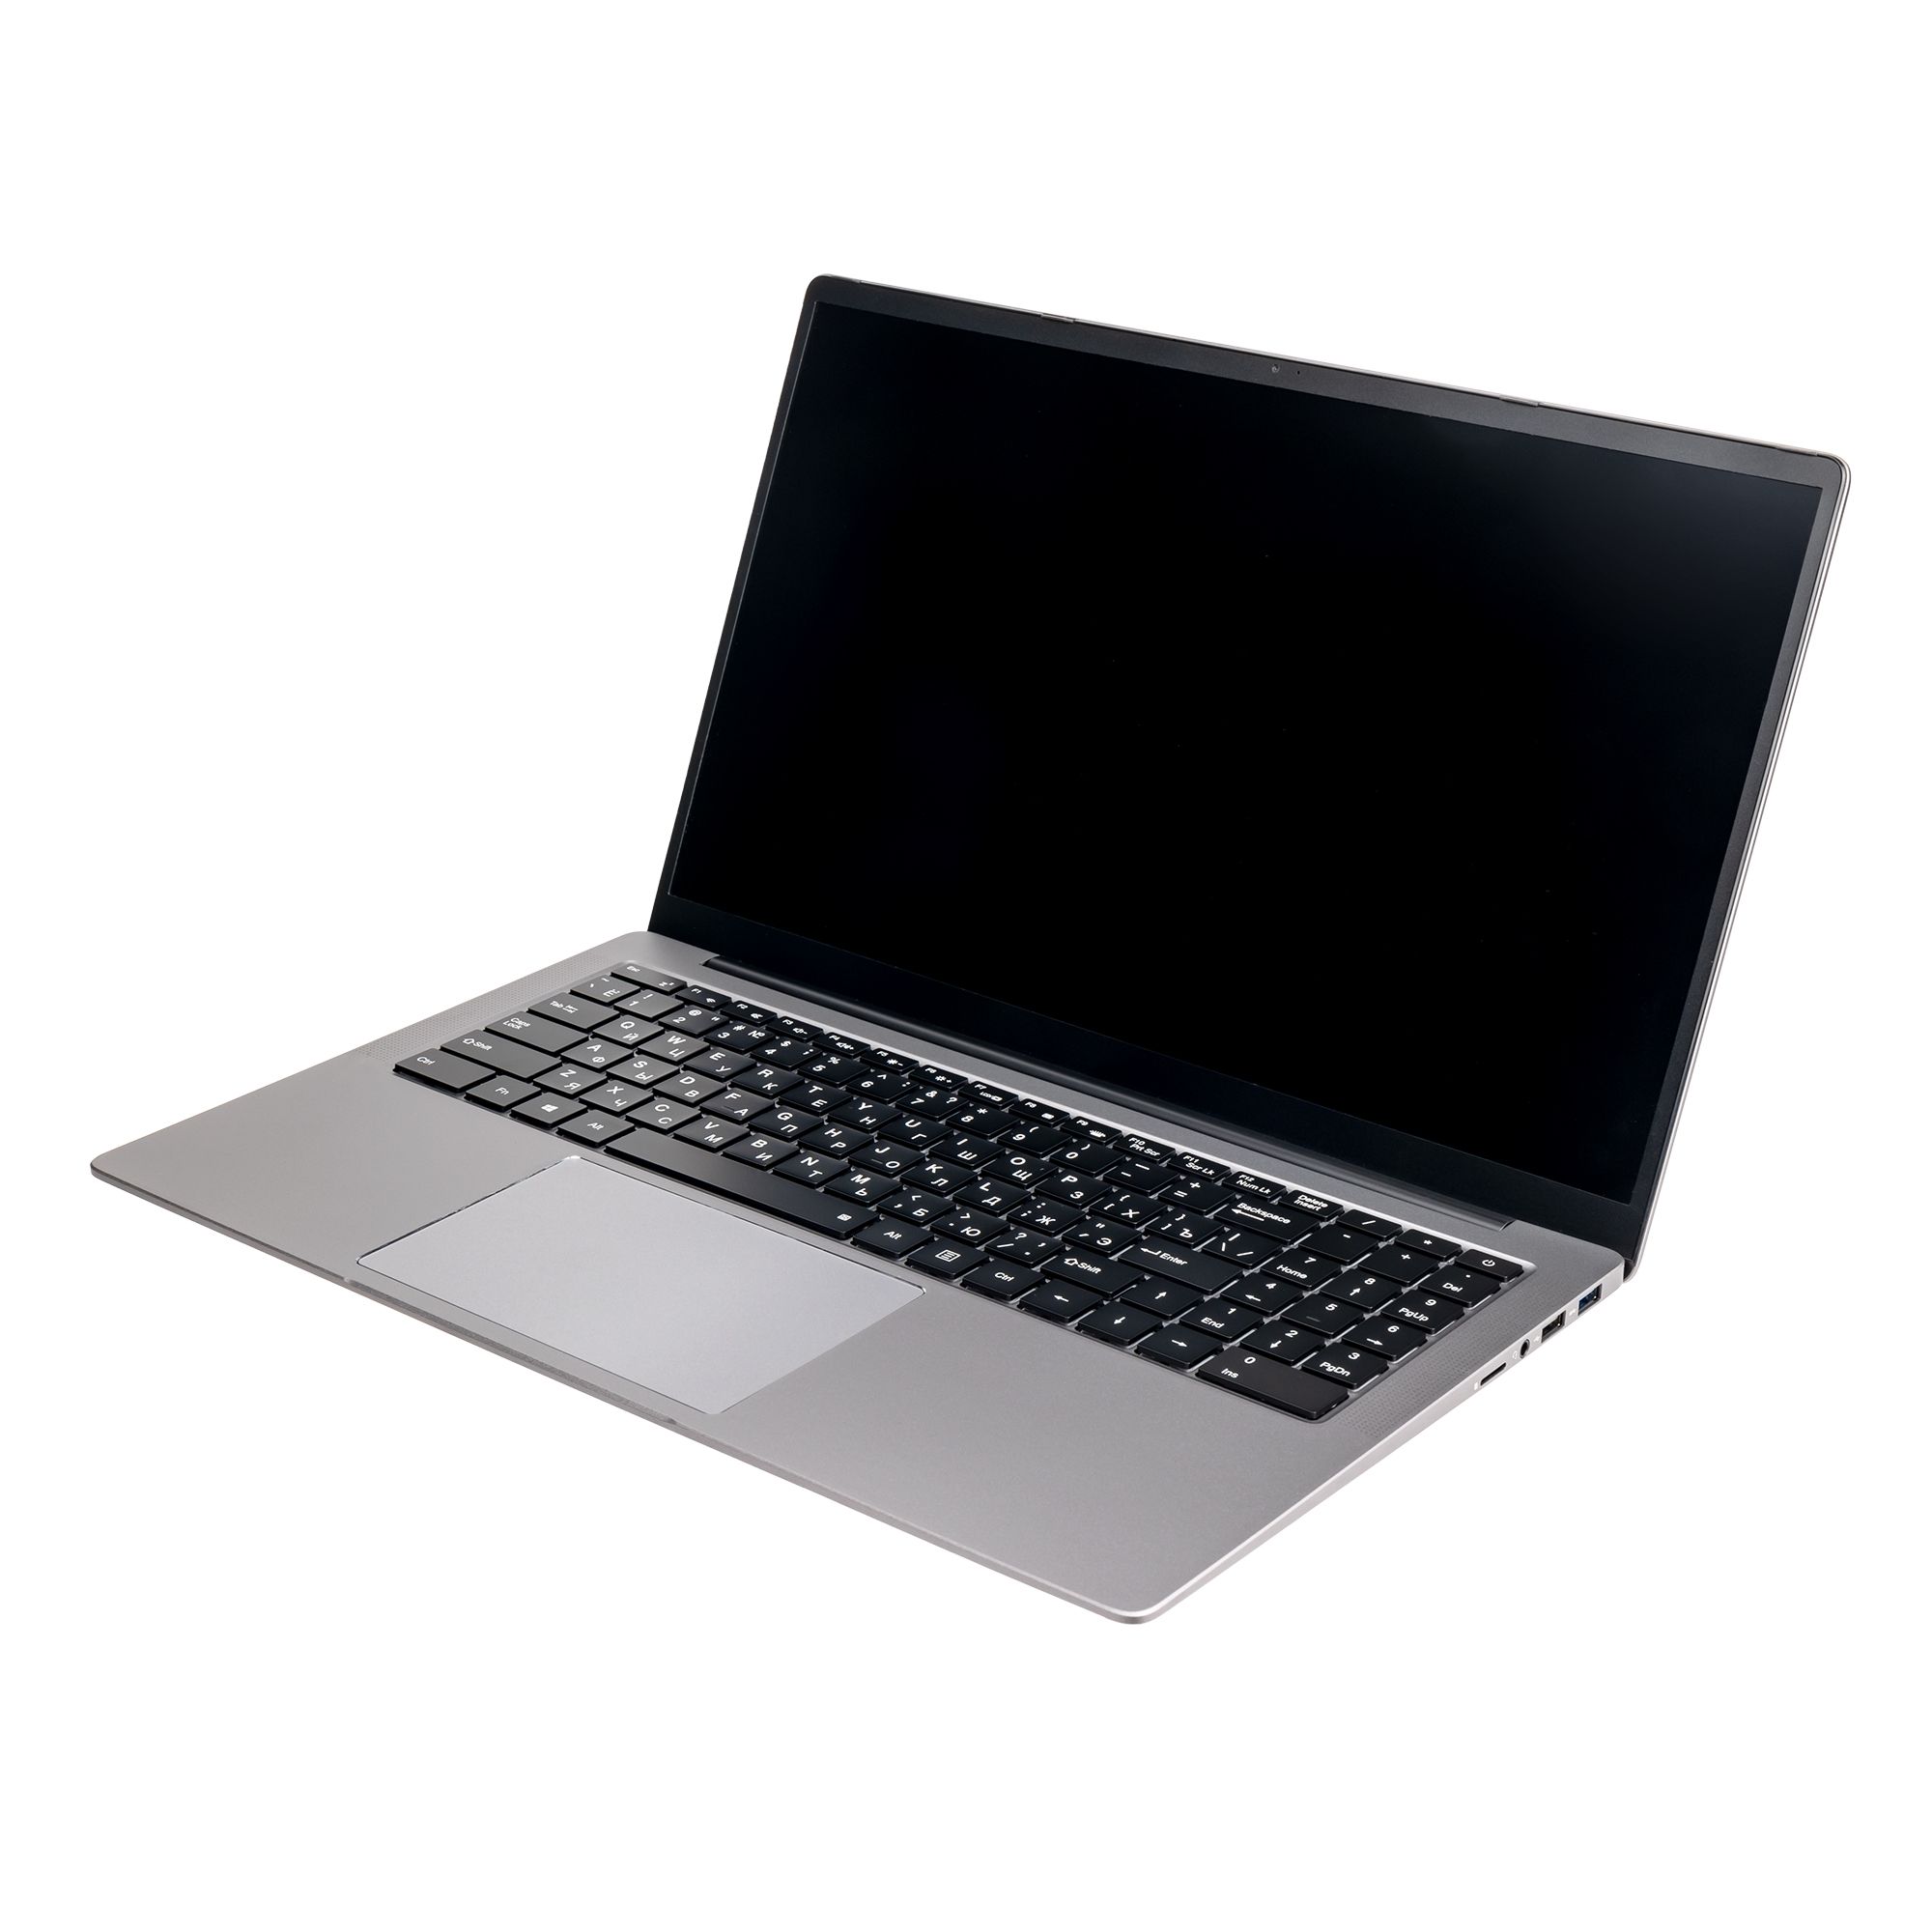 Ноутбук Hiper Expertbook MTL1601 (MTL1601A1135WH) цена и фото